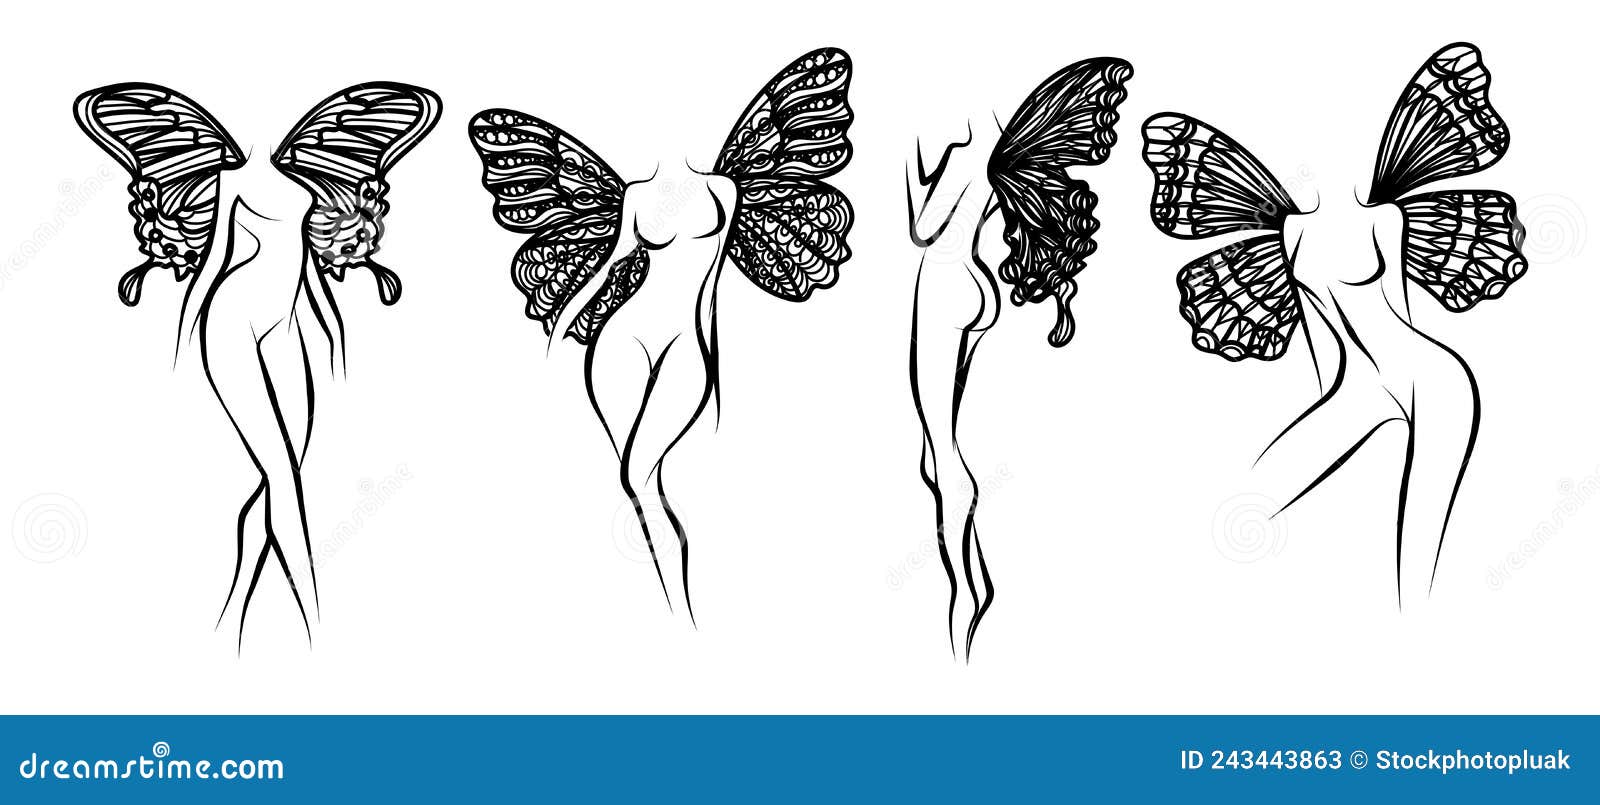 Mujer Tatuada Con Alas De Mariposa Dibujando a Mano Y Dibujando En